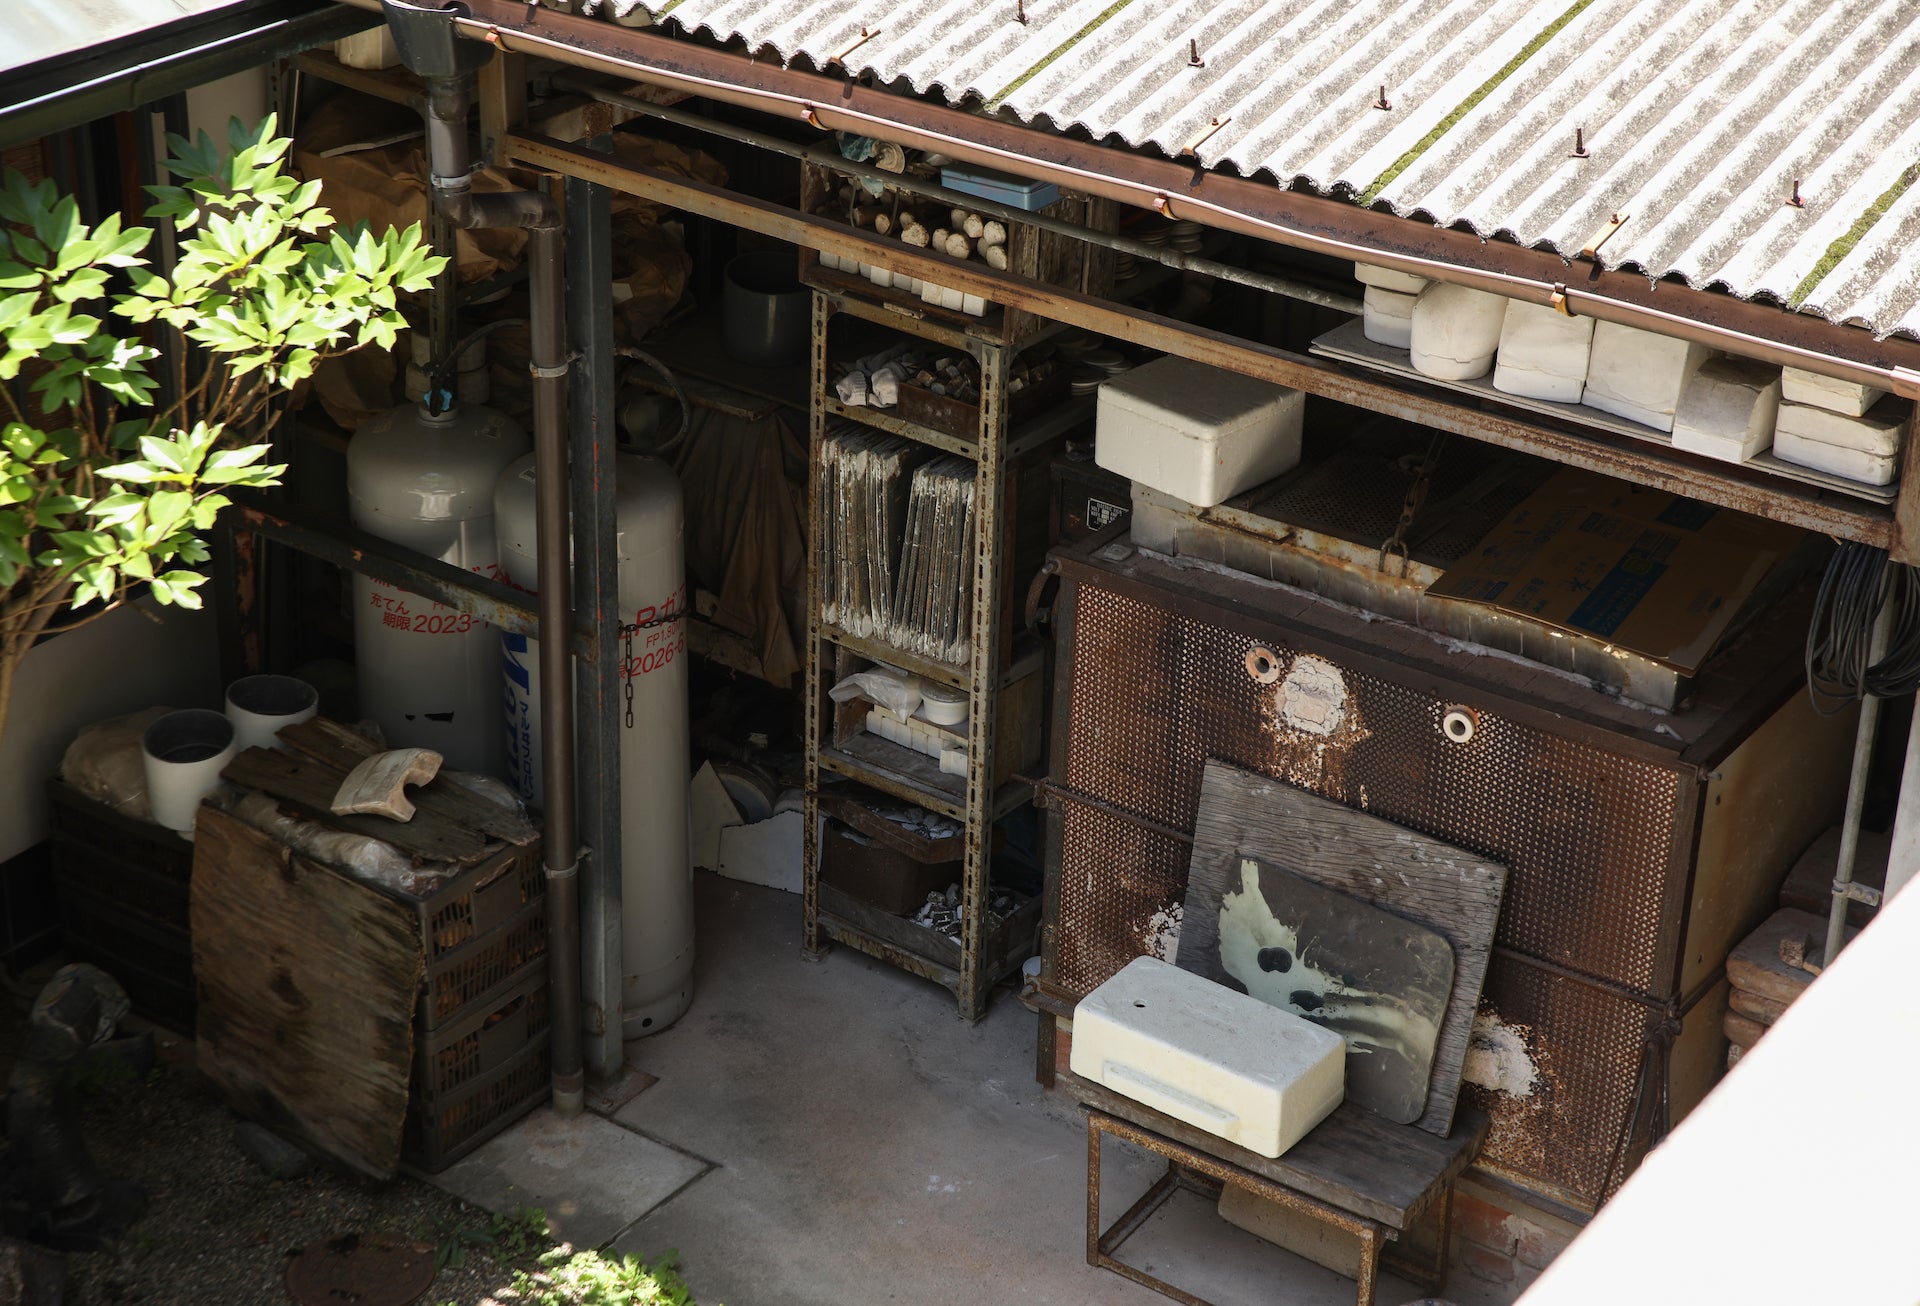 The home-studio of Hayashi Yasuo in Kyoto. Photo © Mika Sasaki